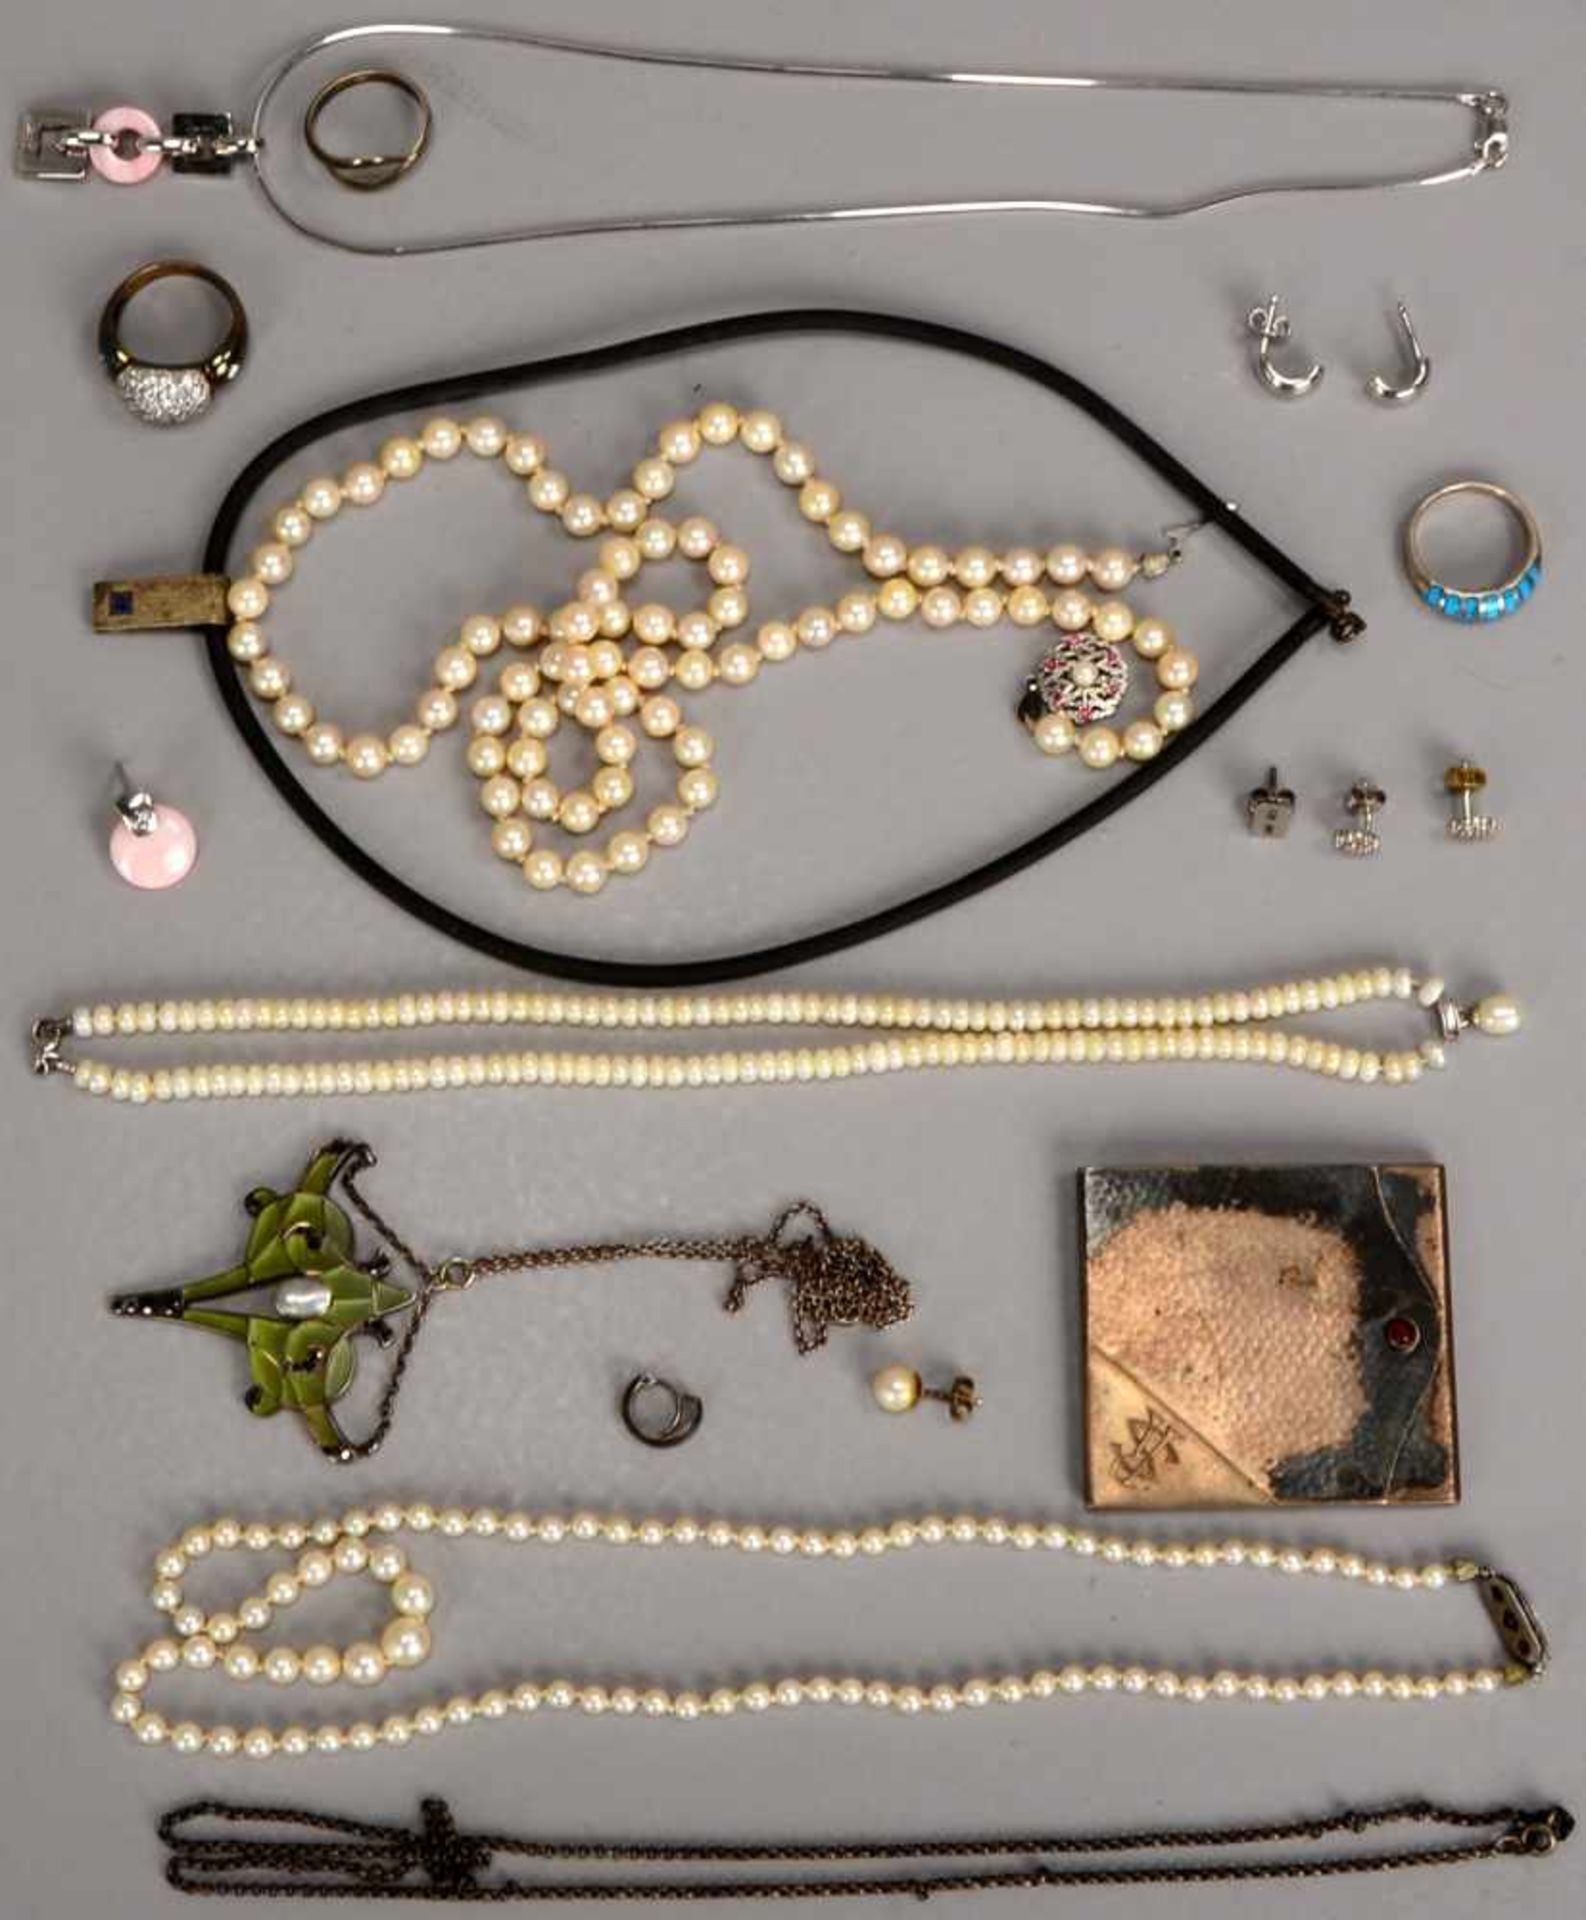 Silber-Konvolut, unterschiedliche Teile und Silbergehalte, 800 Silber - 925 Silber: Ketten,